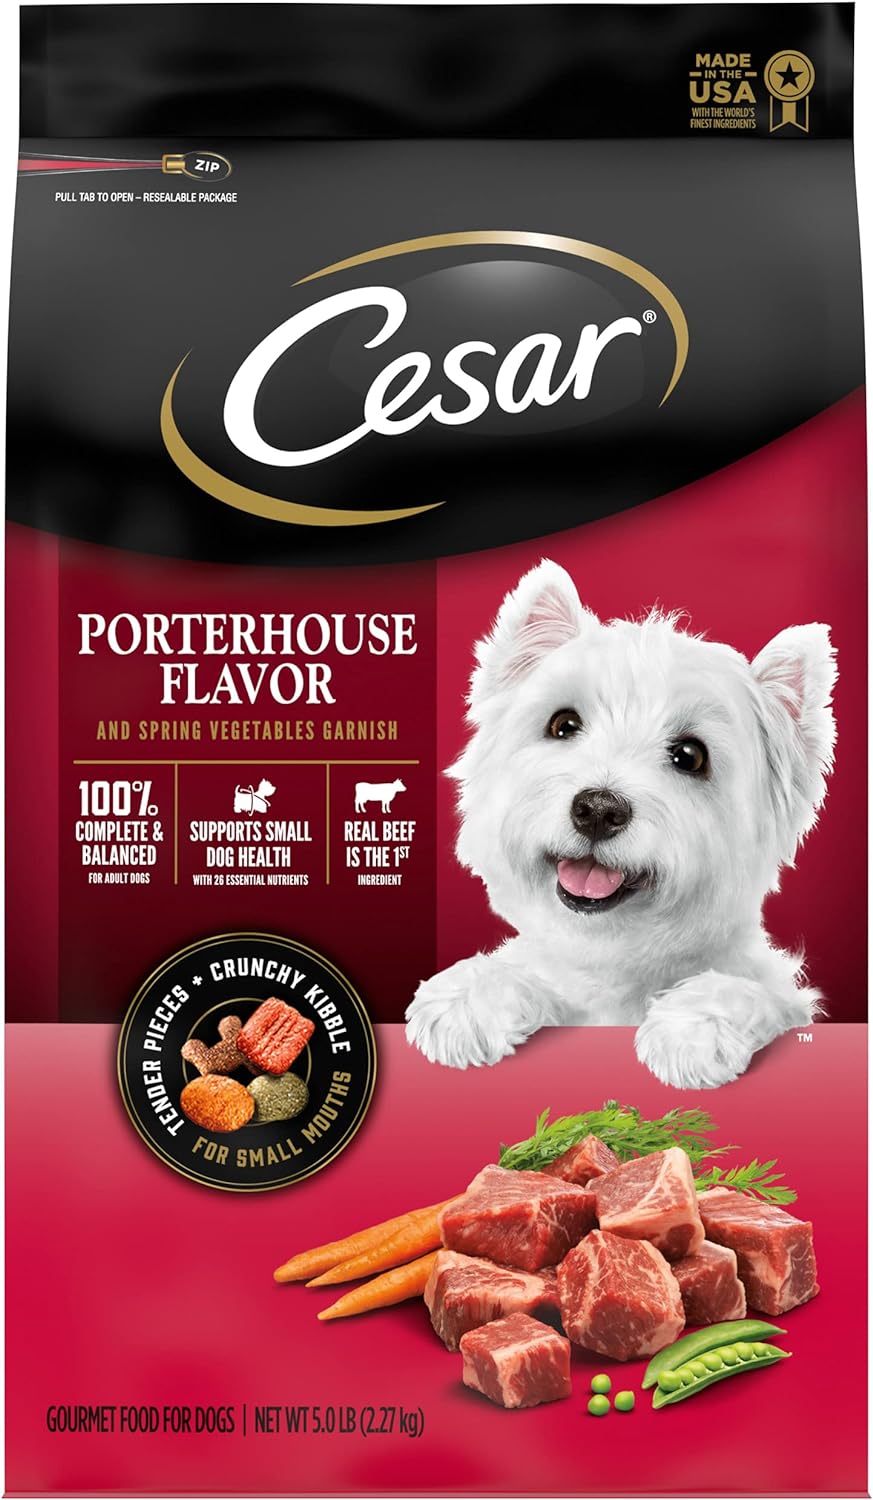 Cesar Porterhouse Flavor & Spring Vegetables Garnish Dry Dog Food – Gallery Image 1